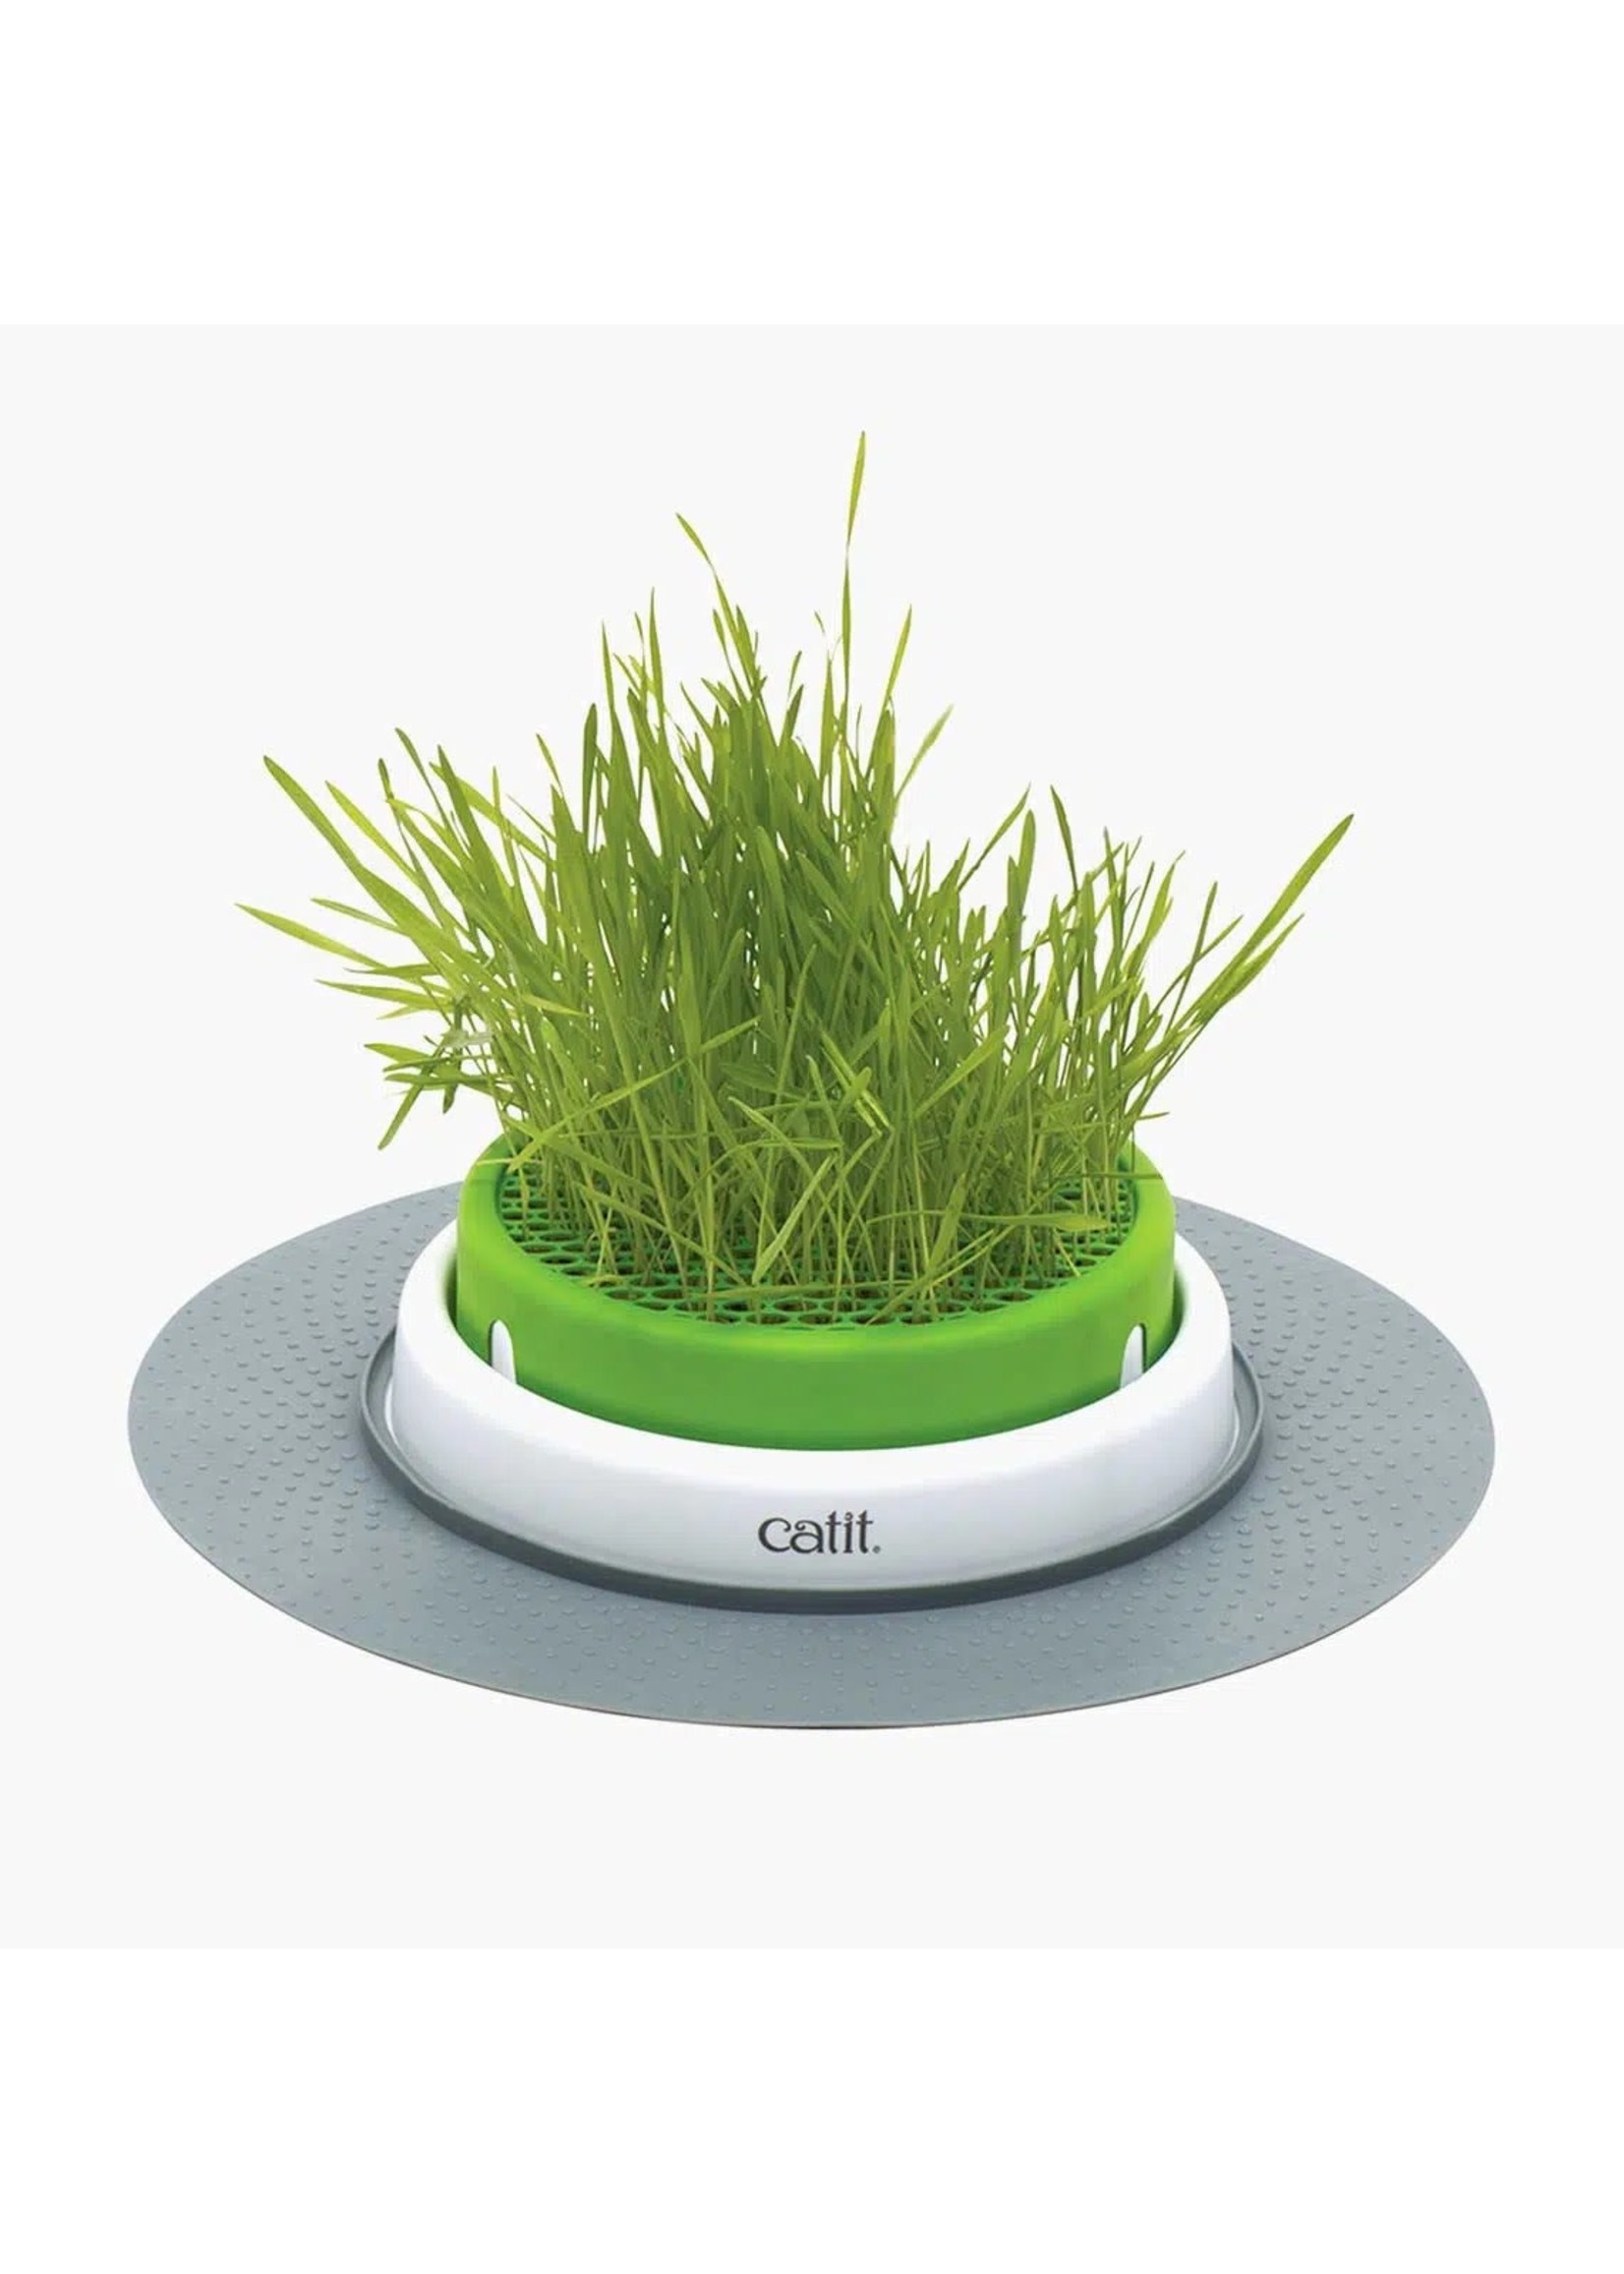 Catit Catit Senses 2.0 Grass Planter